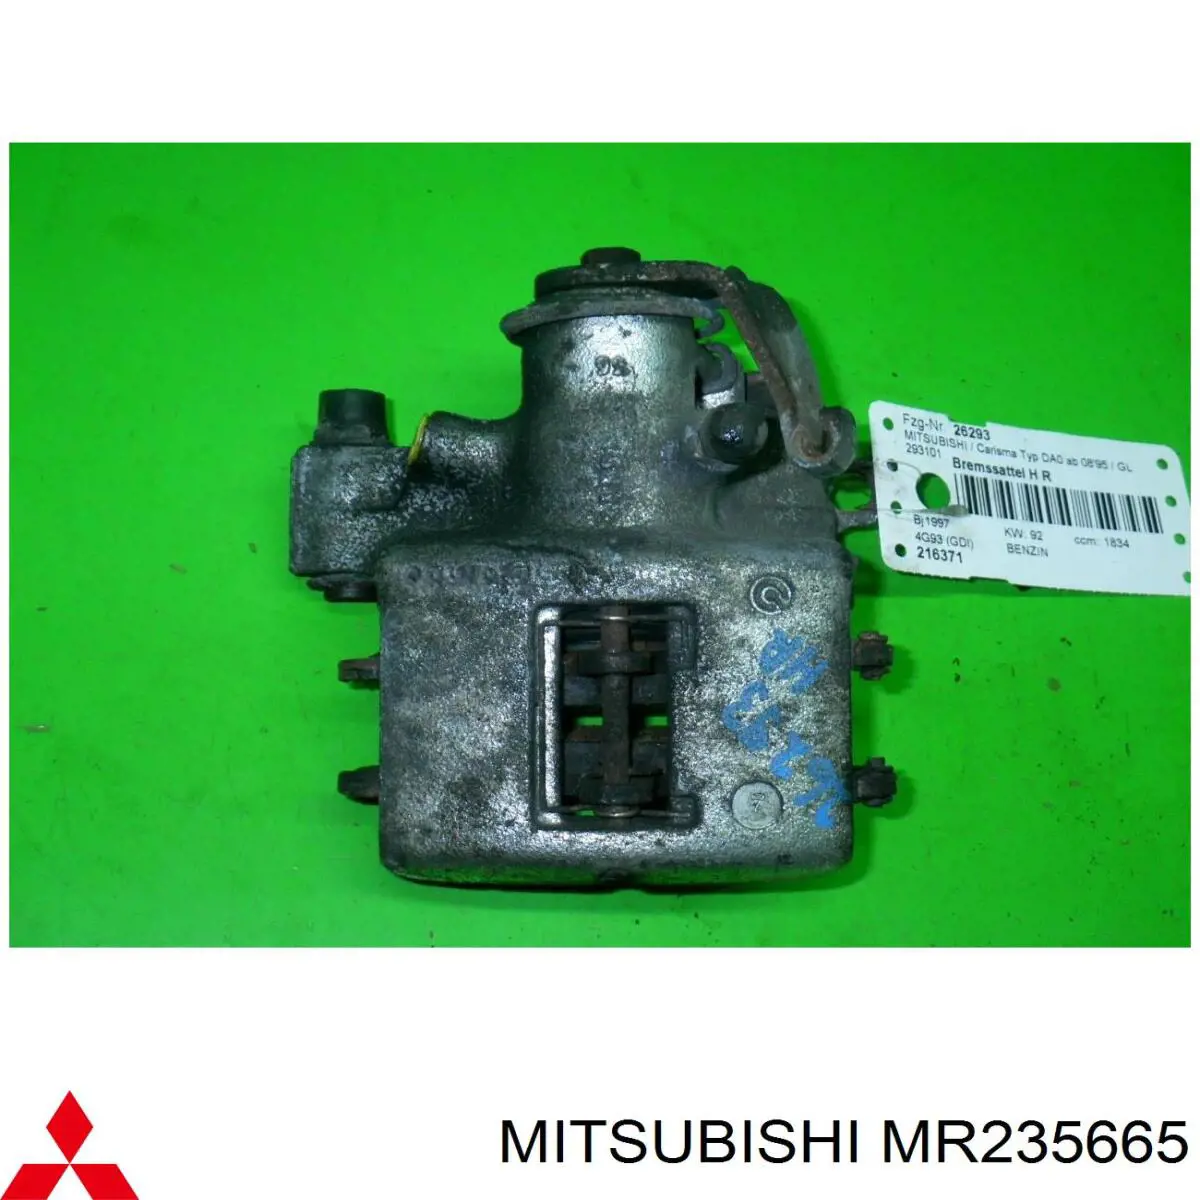 MB534395 Mitsubishi pinza de freno trasero derecho